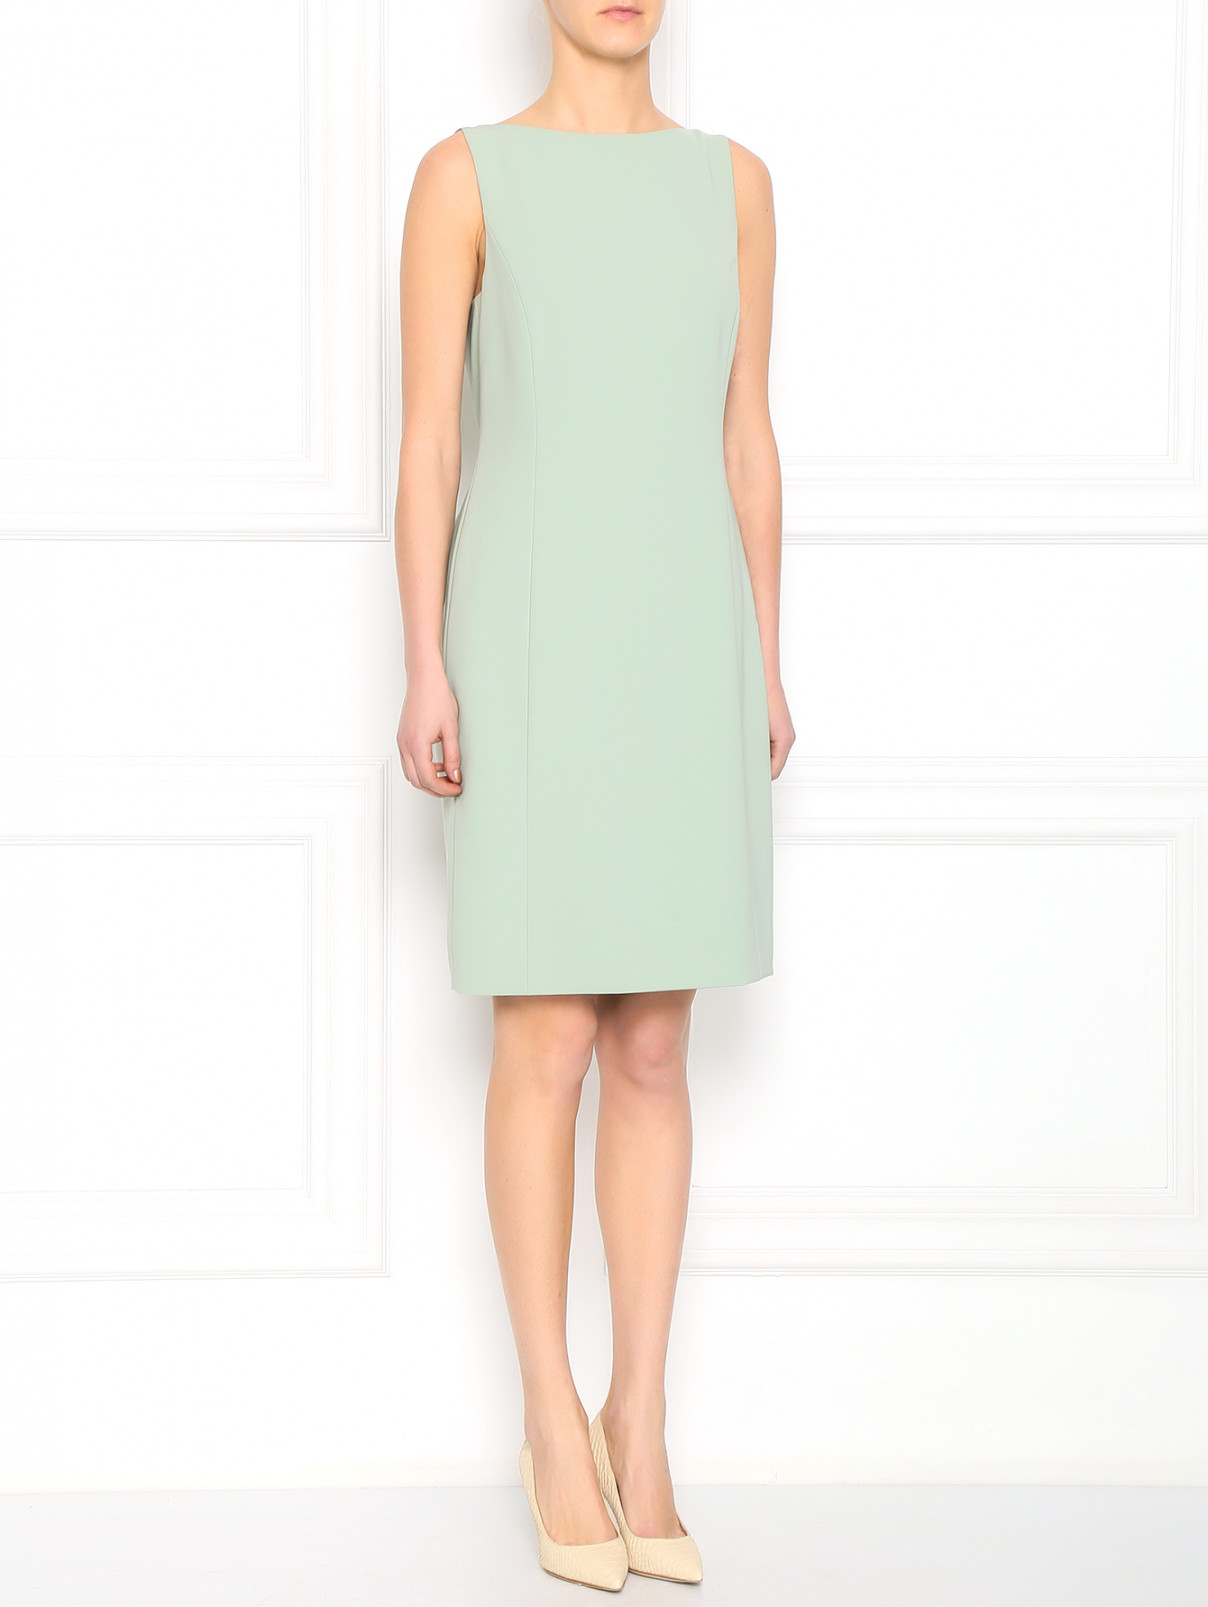 Платье-футляр со сборкой на спине Moschino  –  Модель Общий вид  – Цвет:  Зеленый